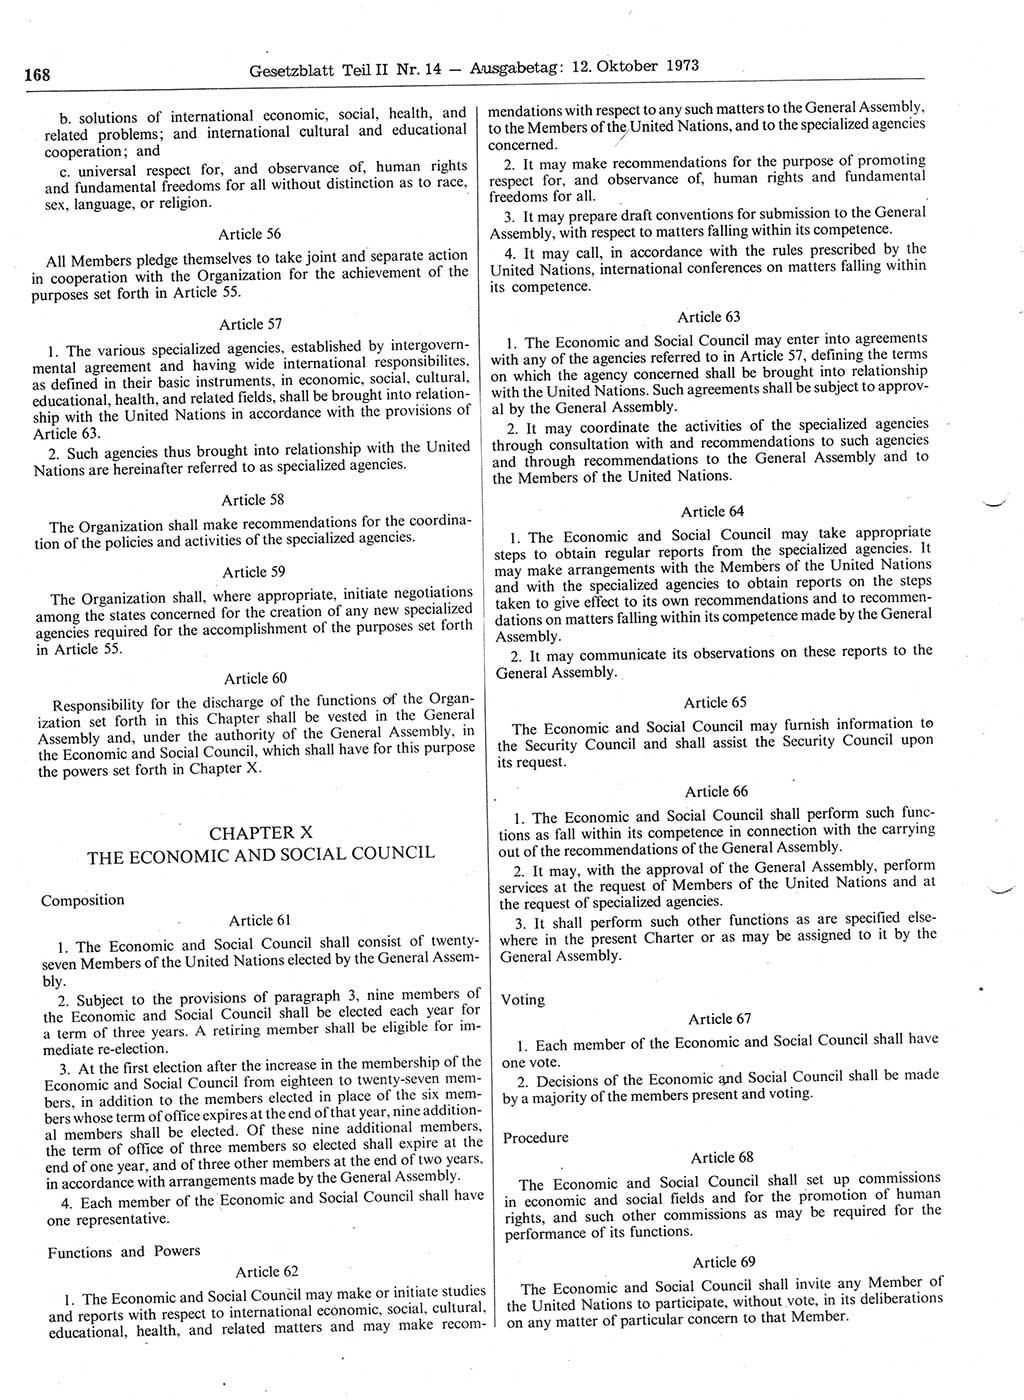 Gesetzblatt (GBl.) der Deutschen Demokratischen Republik (DDR) Teil ⅠⅠ 1973, Seite 168 (GBl. DDR ⅠⅠ 1973, S. 168)